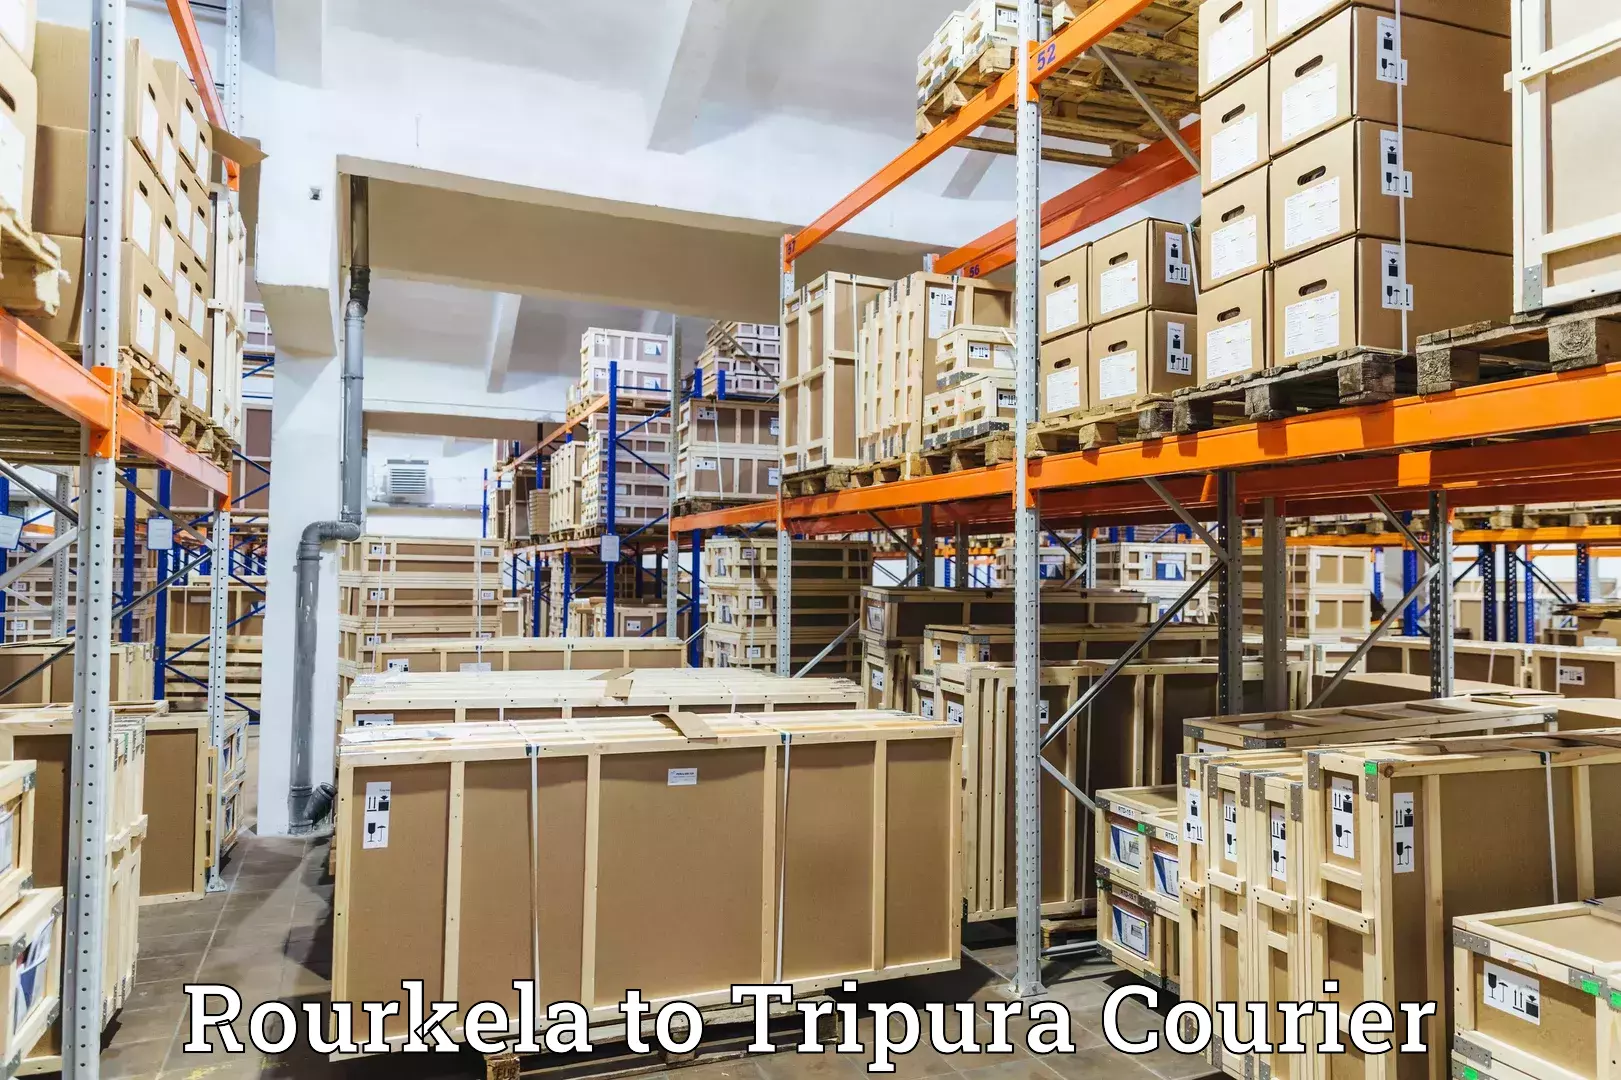 Multi-city courier Rourkela to Agartala